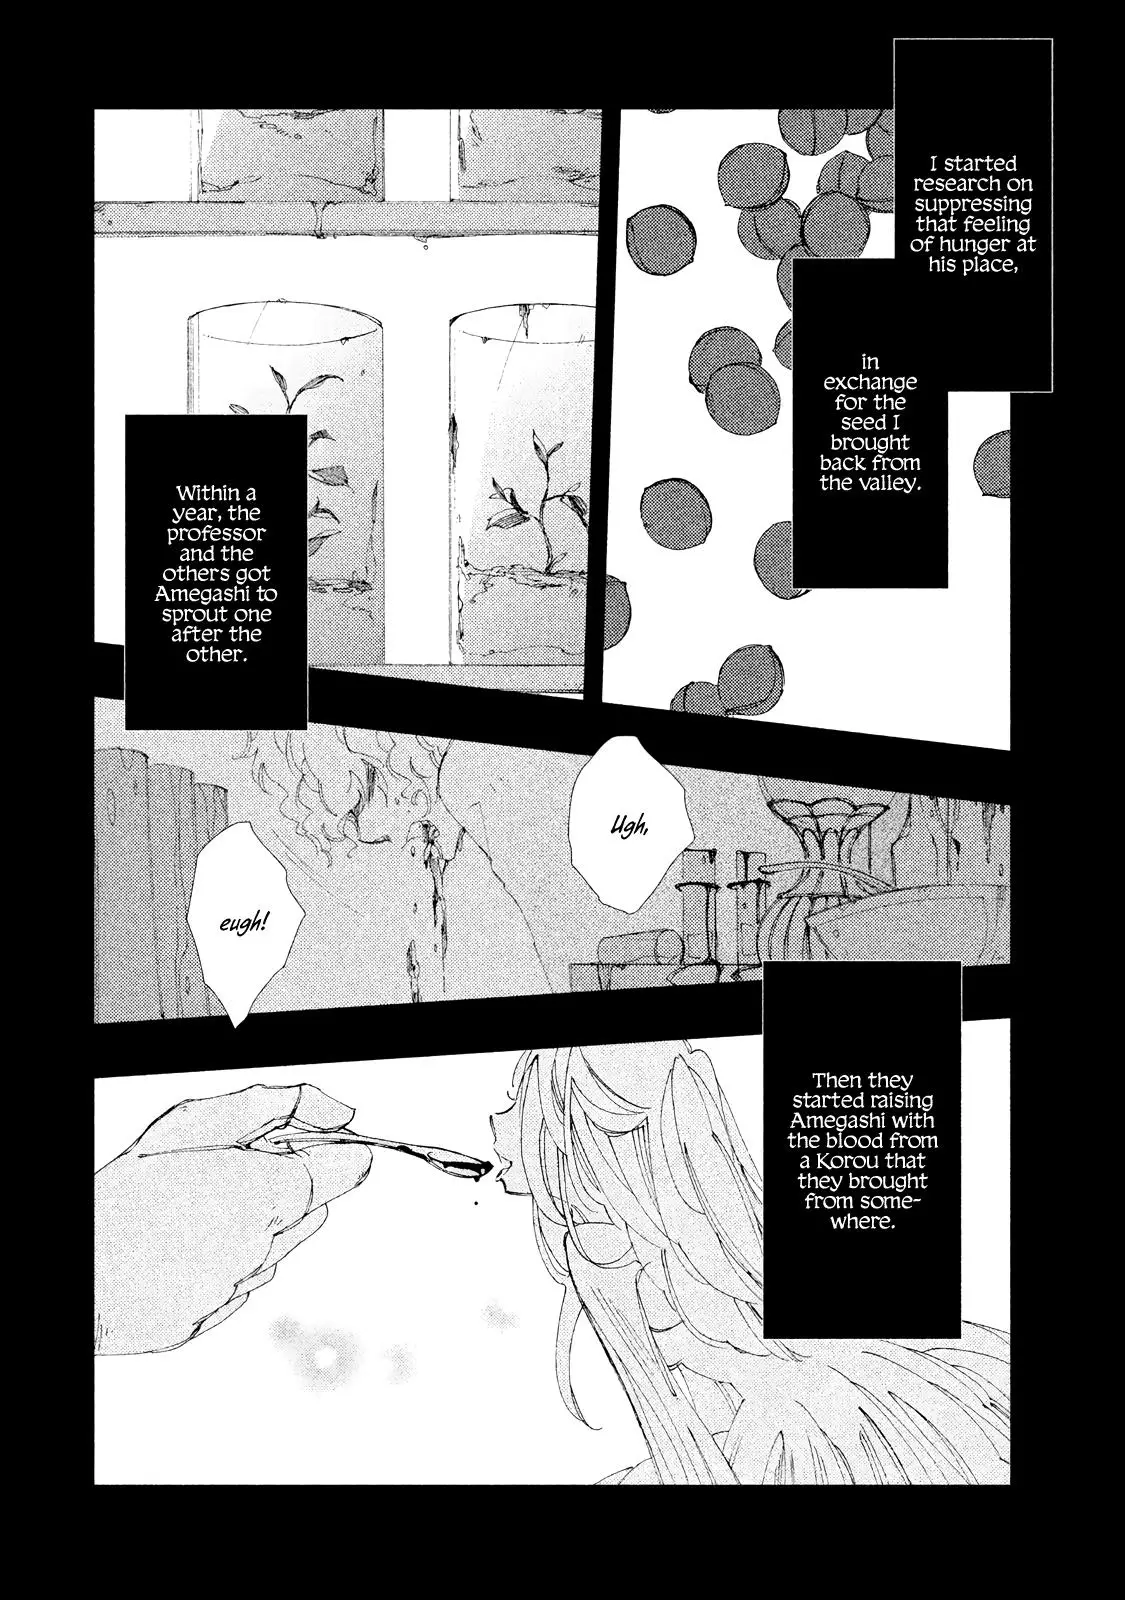 Amegashi - 6 page 7-fc01661c